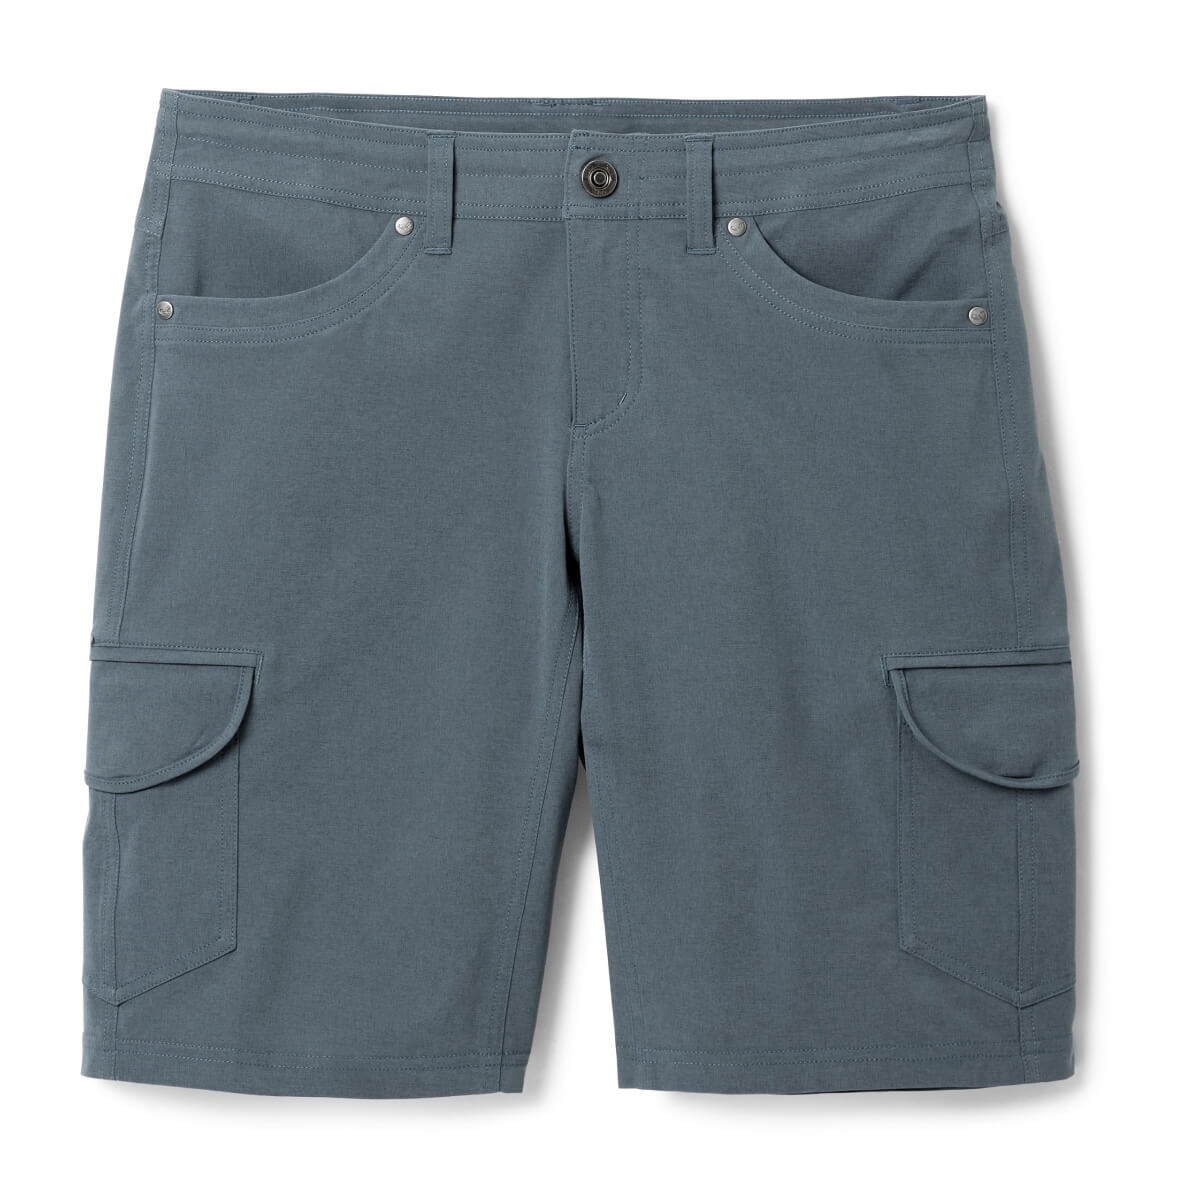 Kuhl Freeflex Cargo Shorts